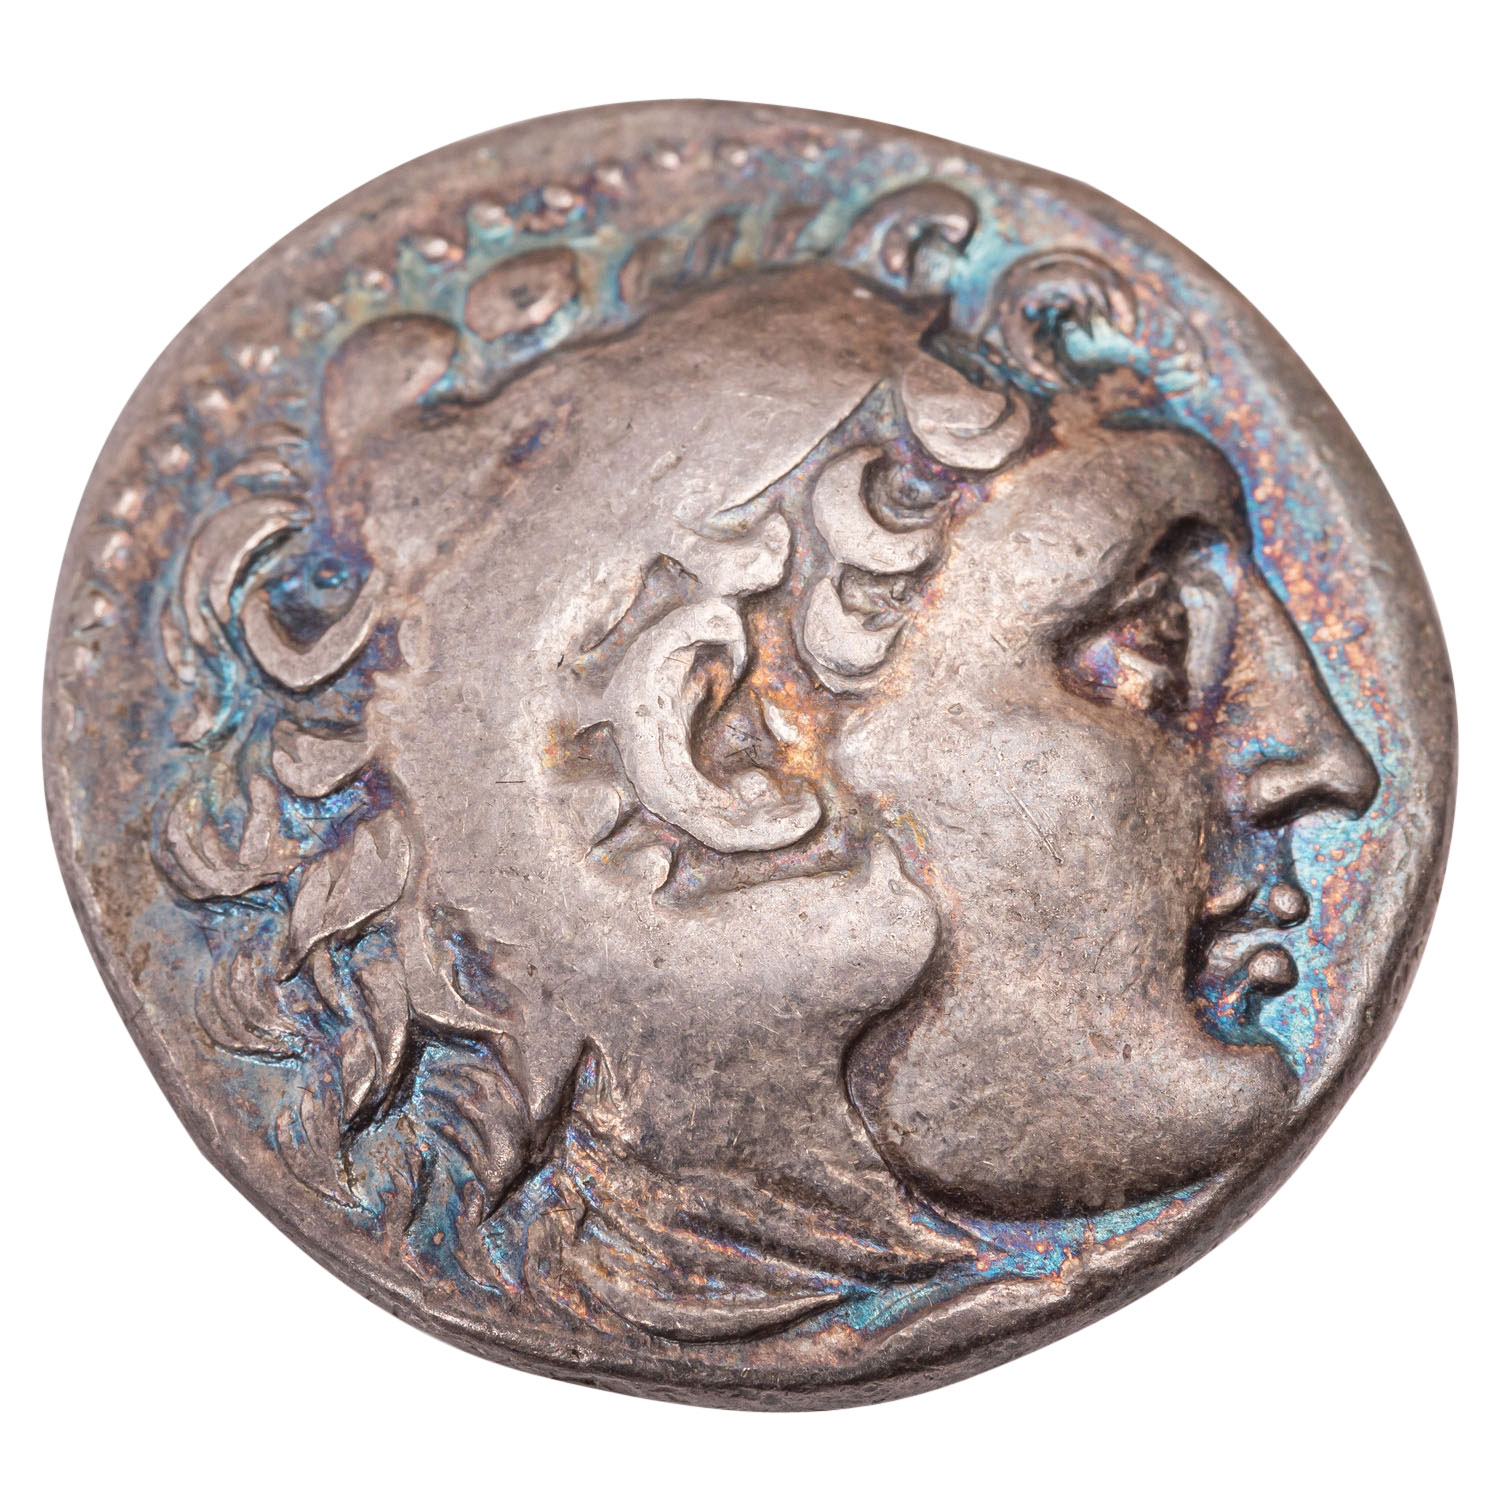 Antikes Griechenland, Makedonien - Alexander III., der Große, Tetradrachme